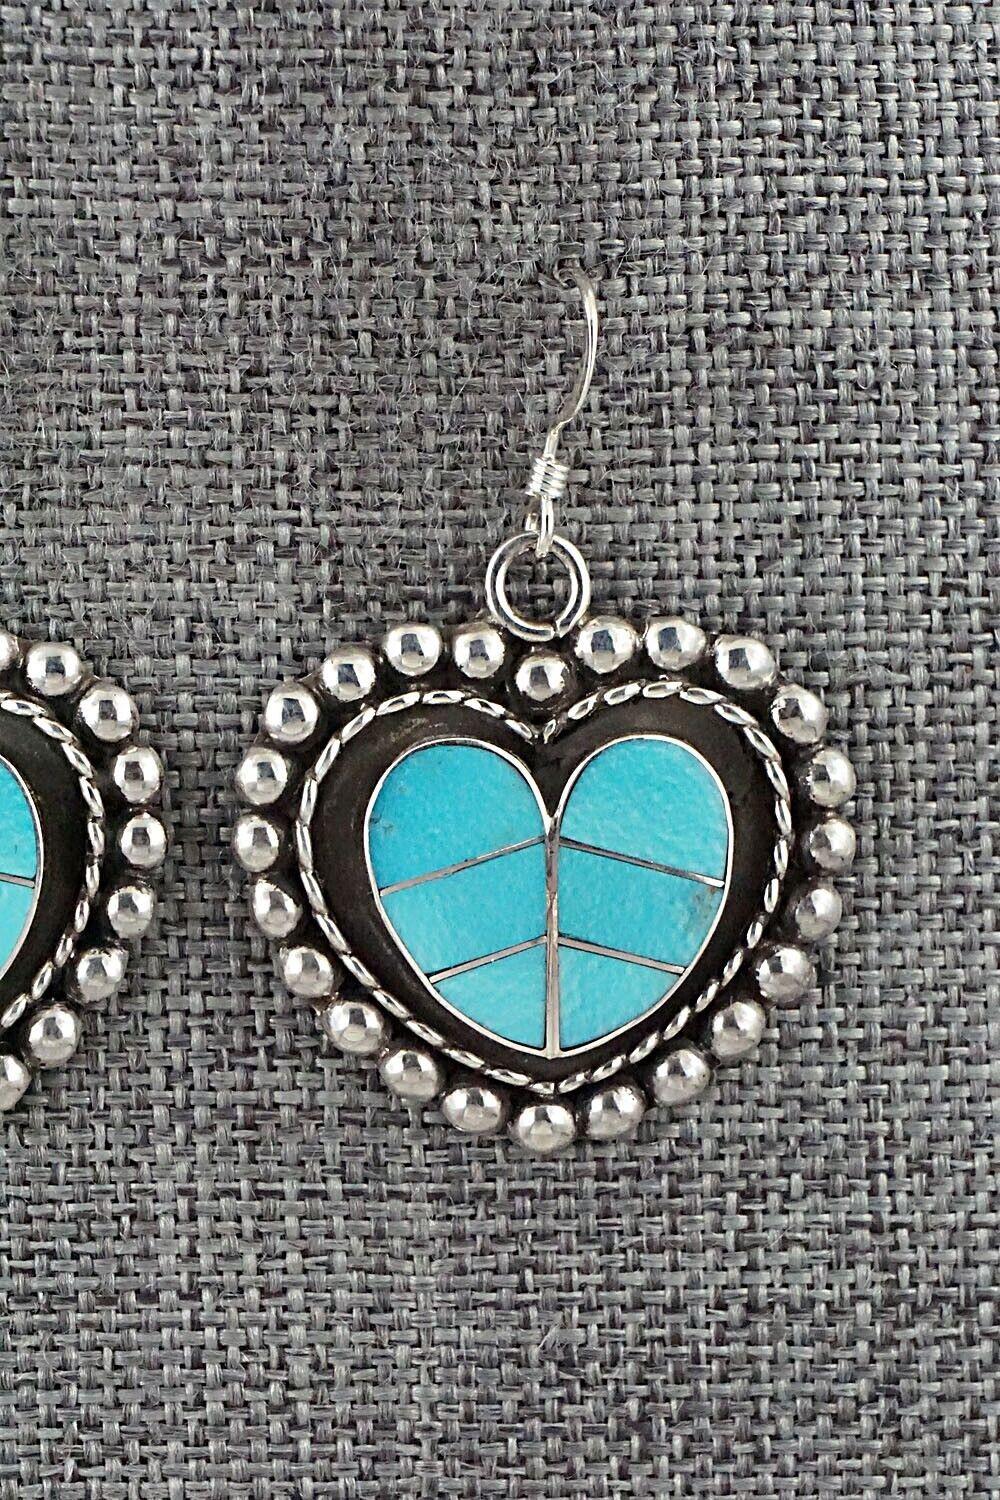 Turquoise & Sterling Silver Earrings - Faye Lowsayatee